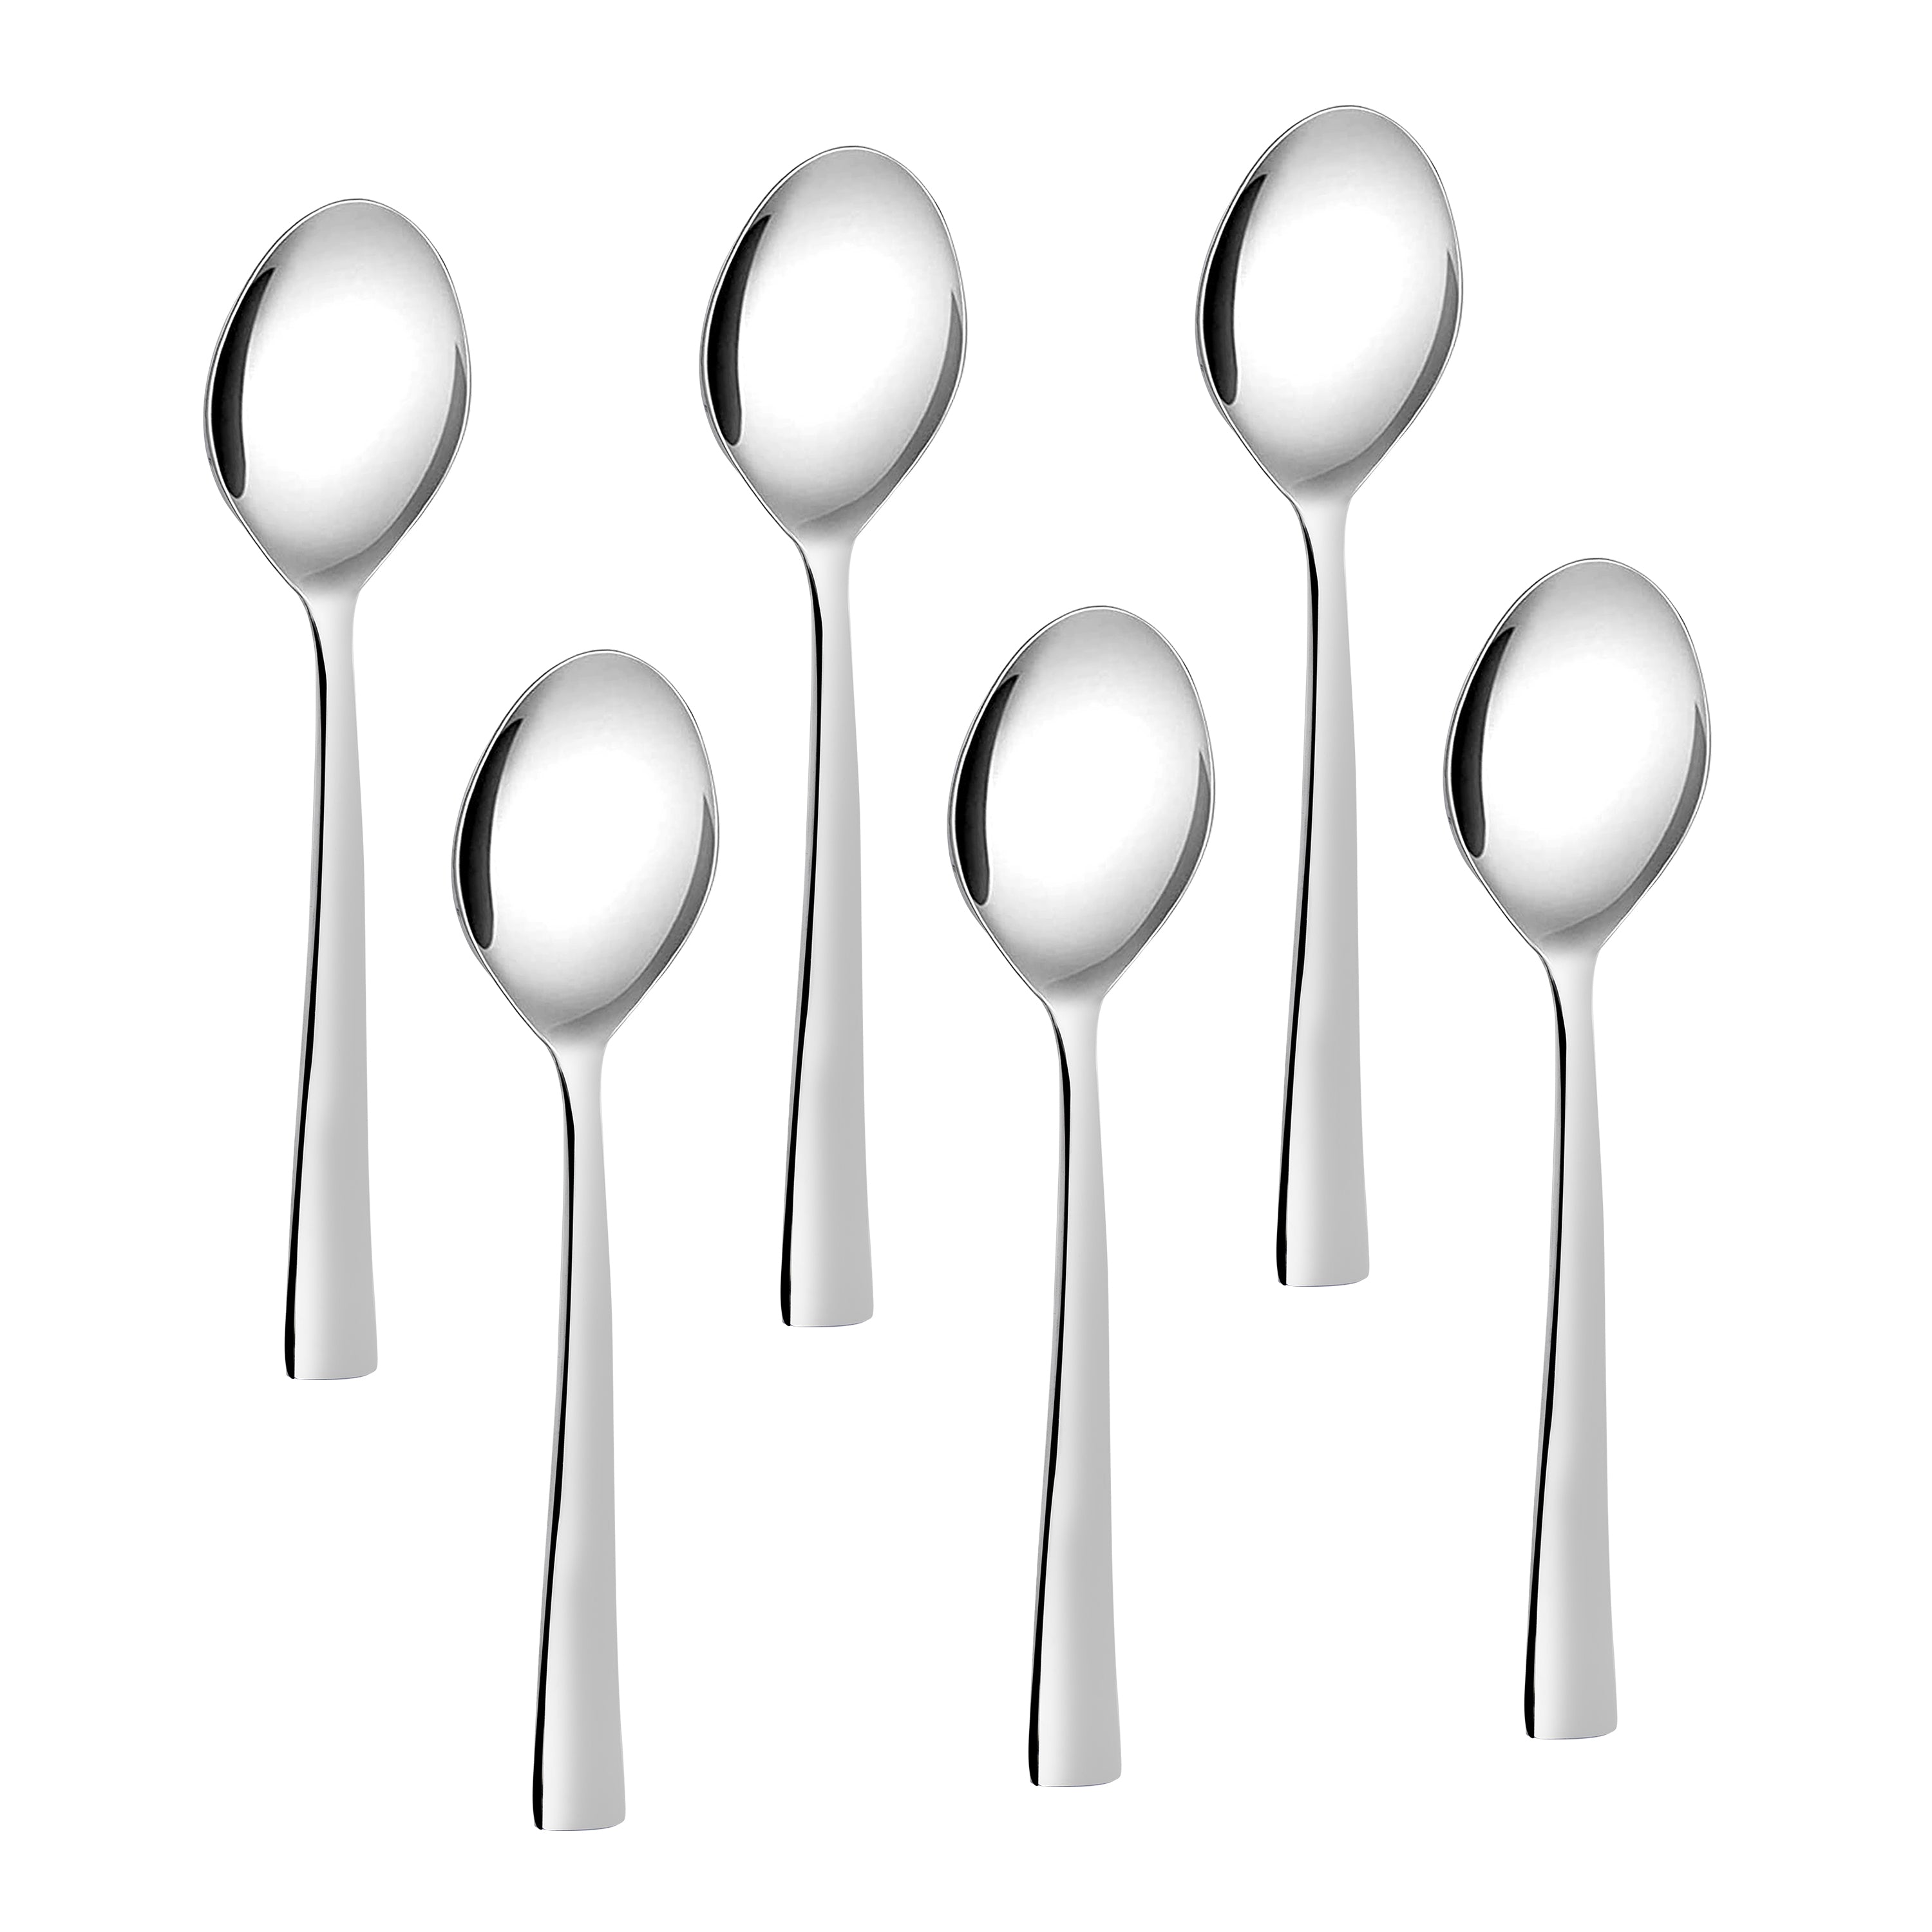 Arias Fiesta Dinner Spoon Set of 6 (Silver)